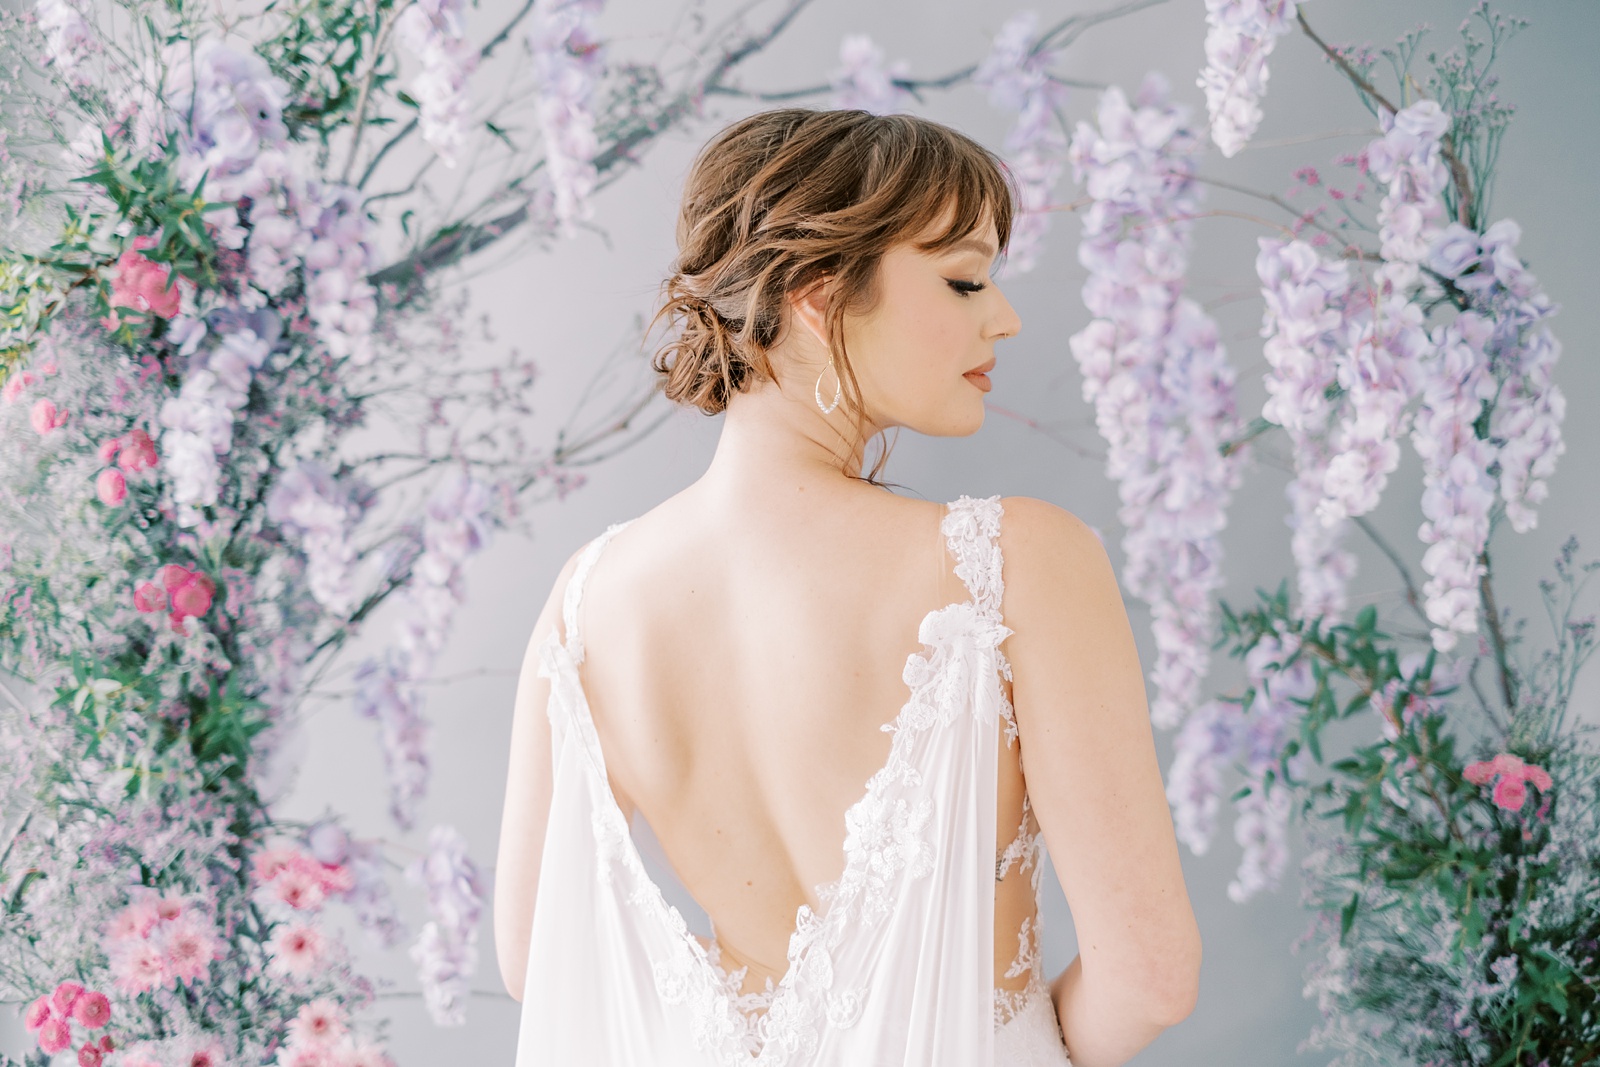 couture bridal gown portrait inspiration